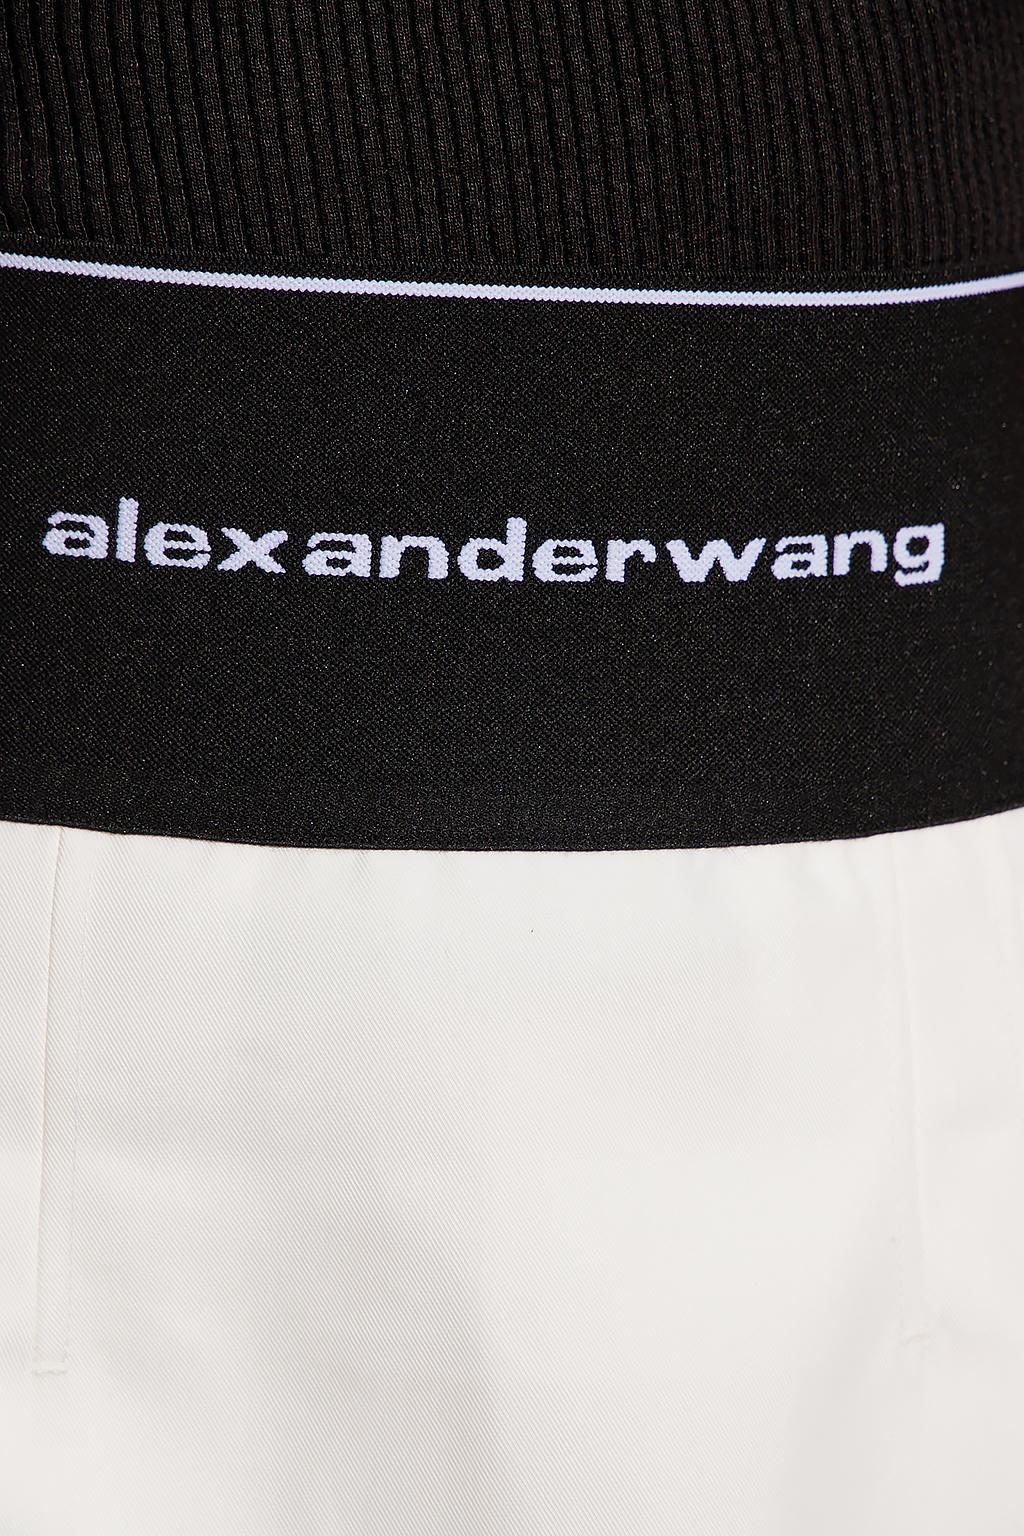 Alexander Wang Enter the world